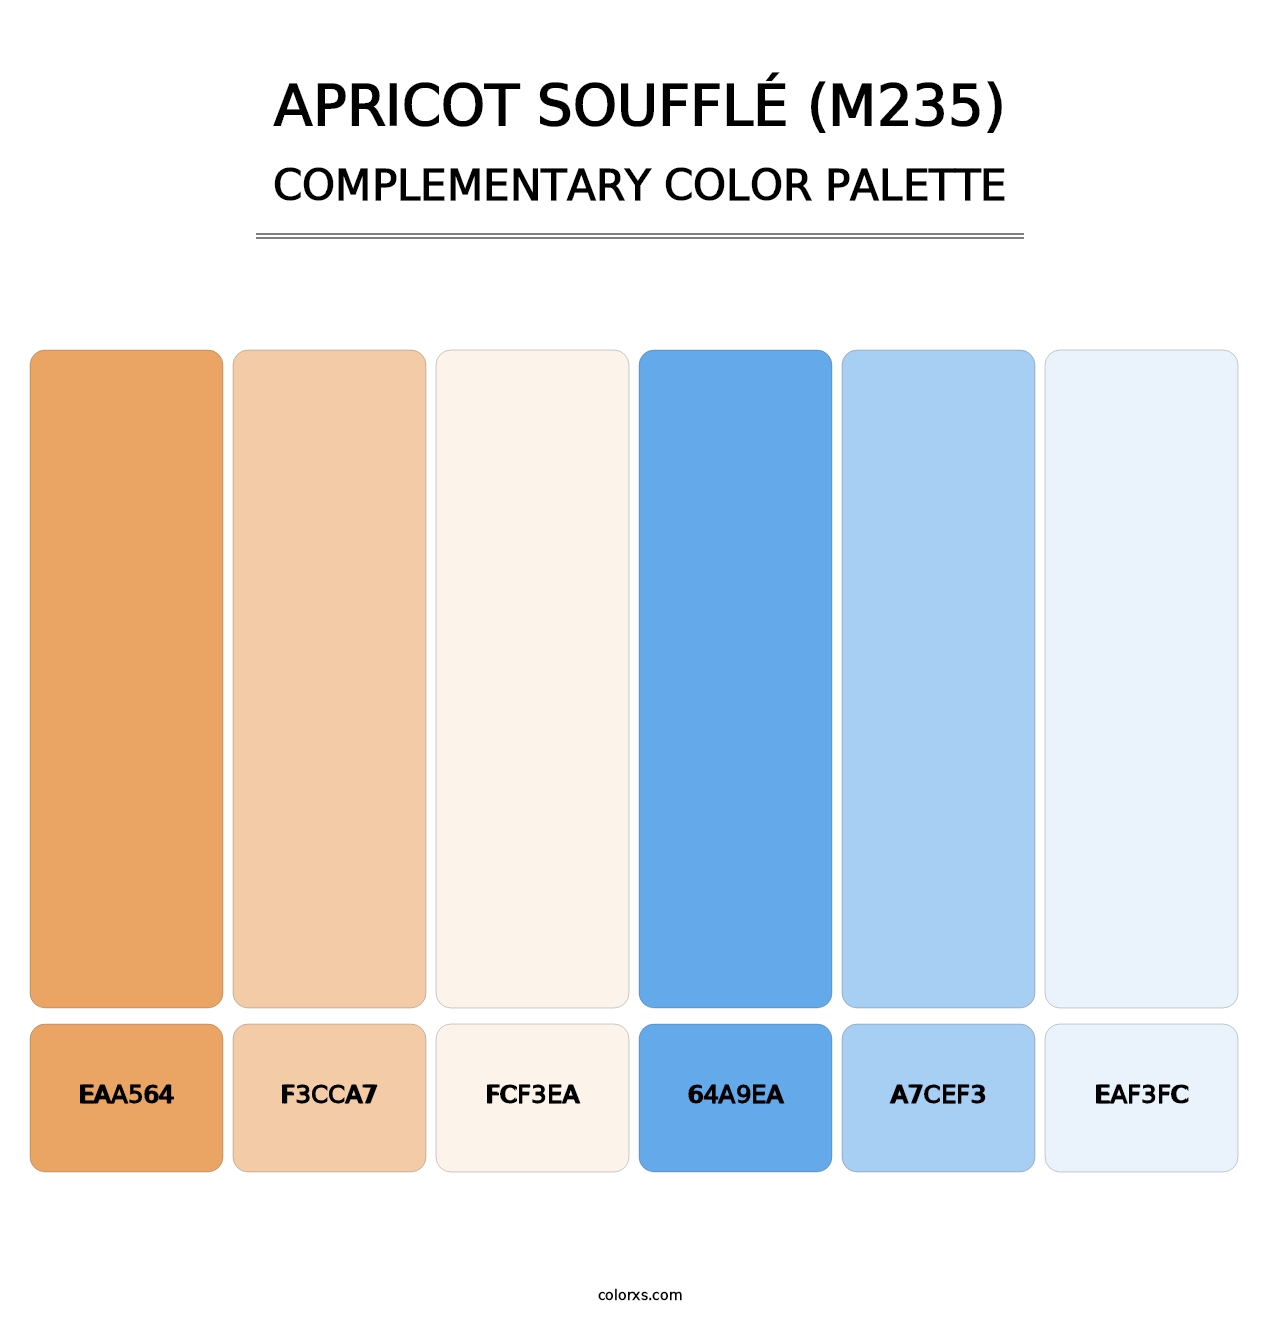 Apricot Soufflé (M235) - Complementary Color Palette